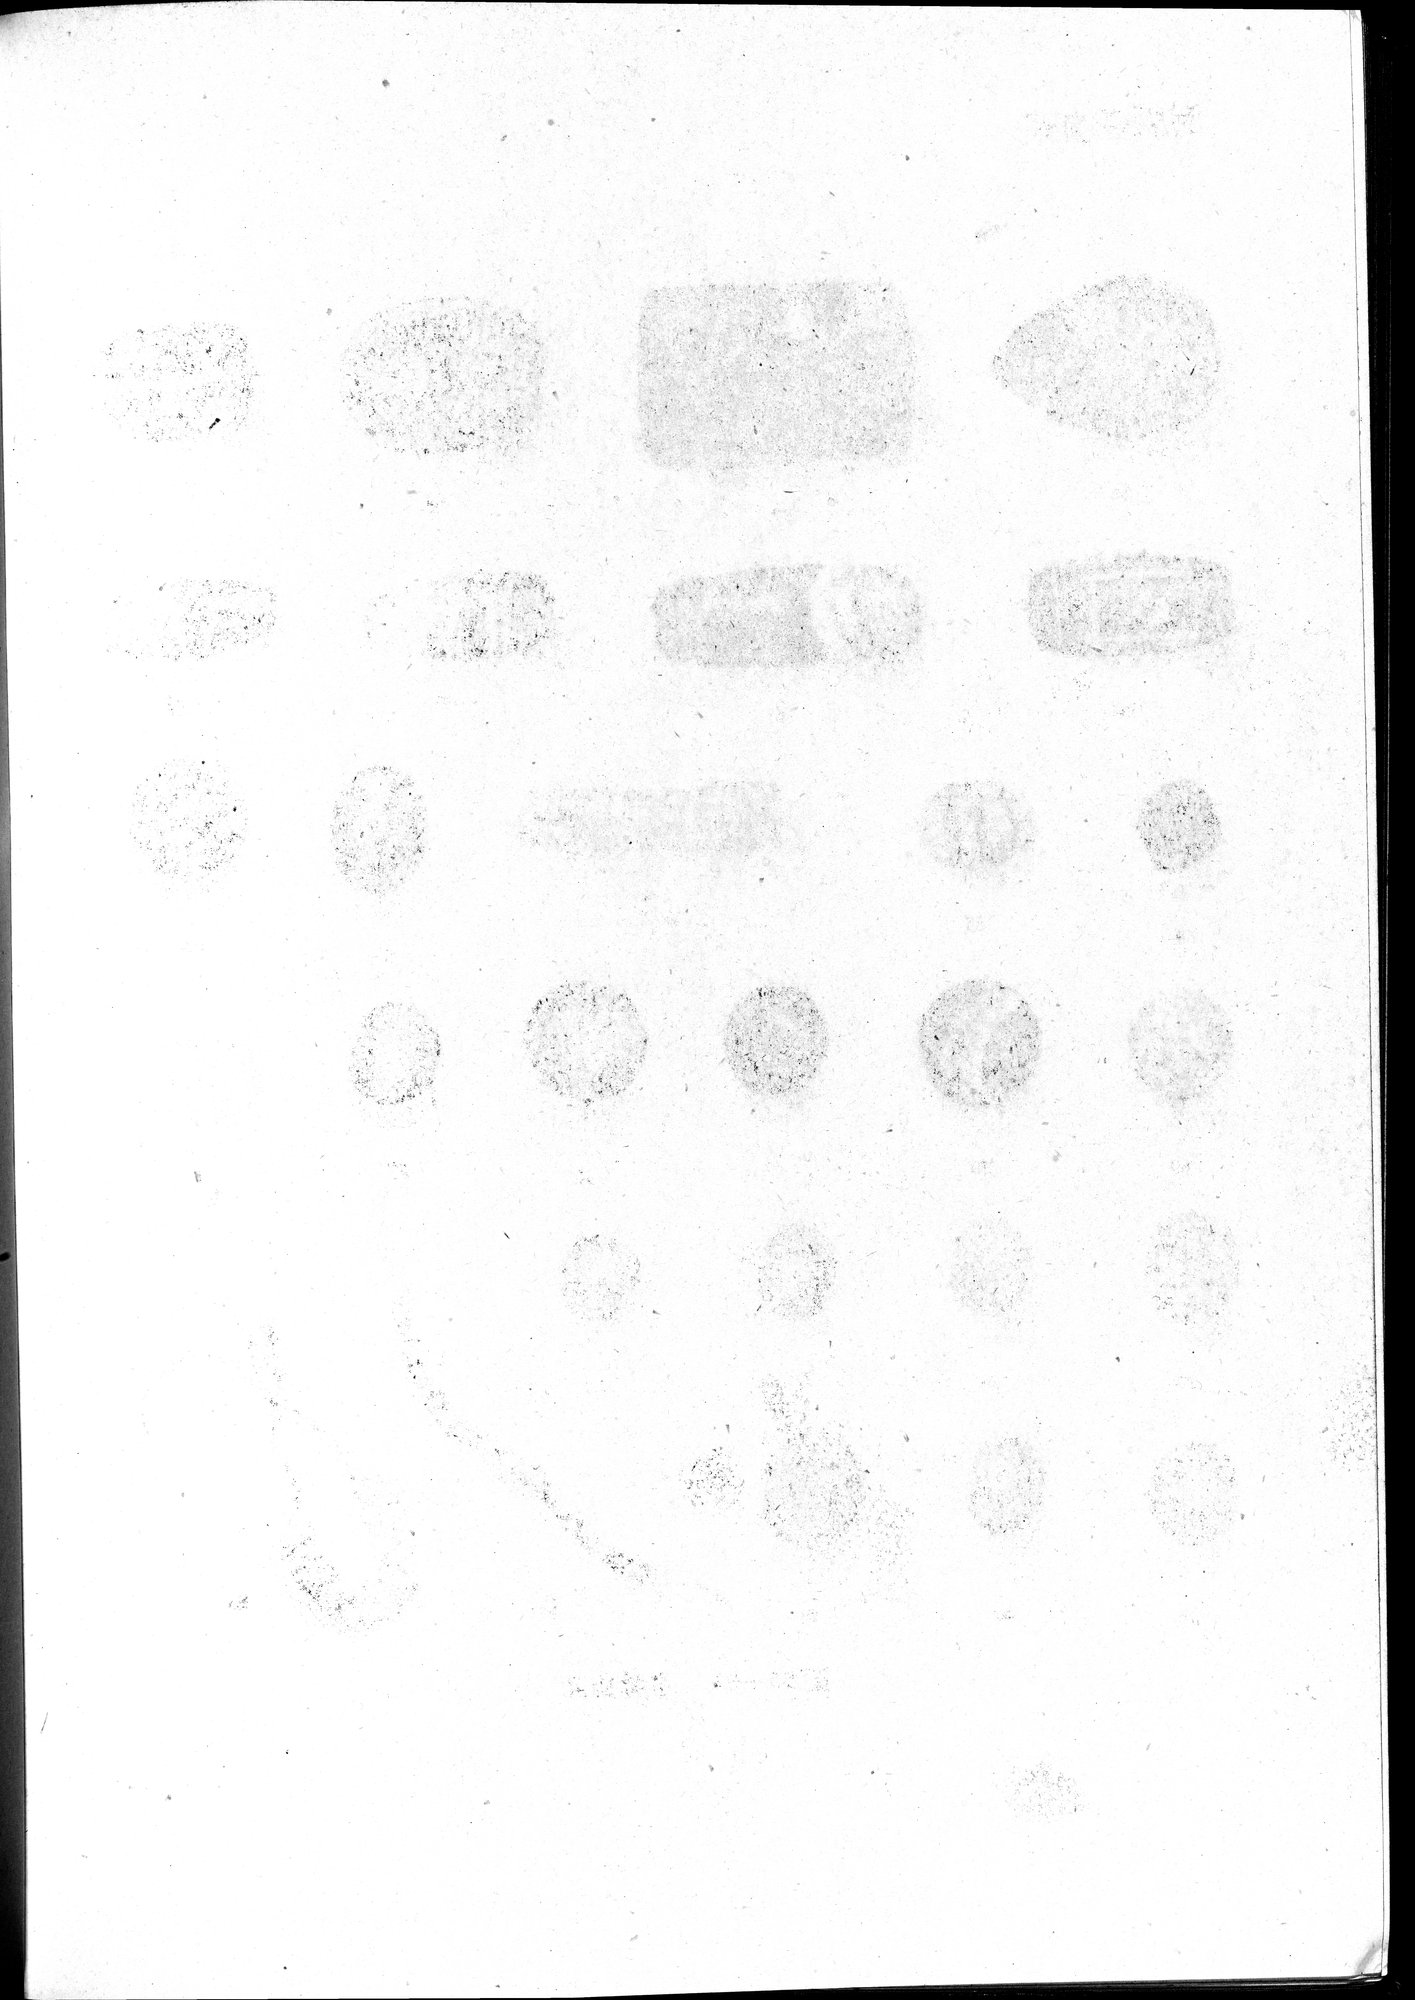 塔里木盆地考古記 : vol.1 / Page 354 (Grayscale High Resolution Image)